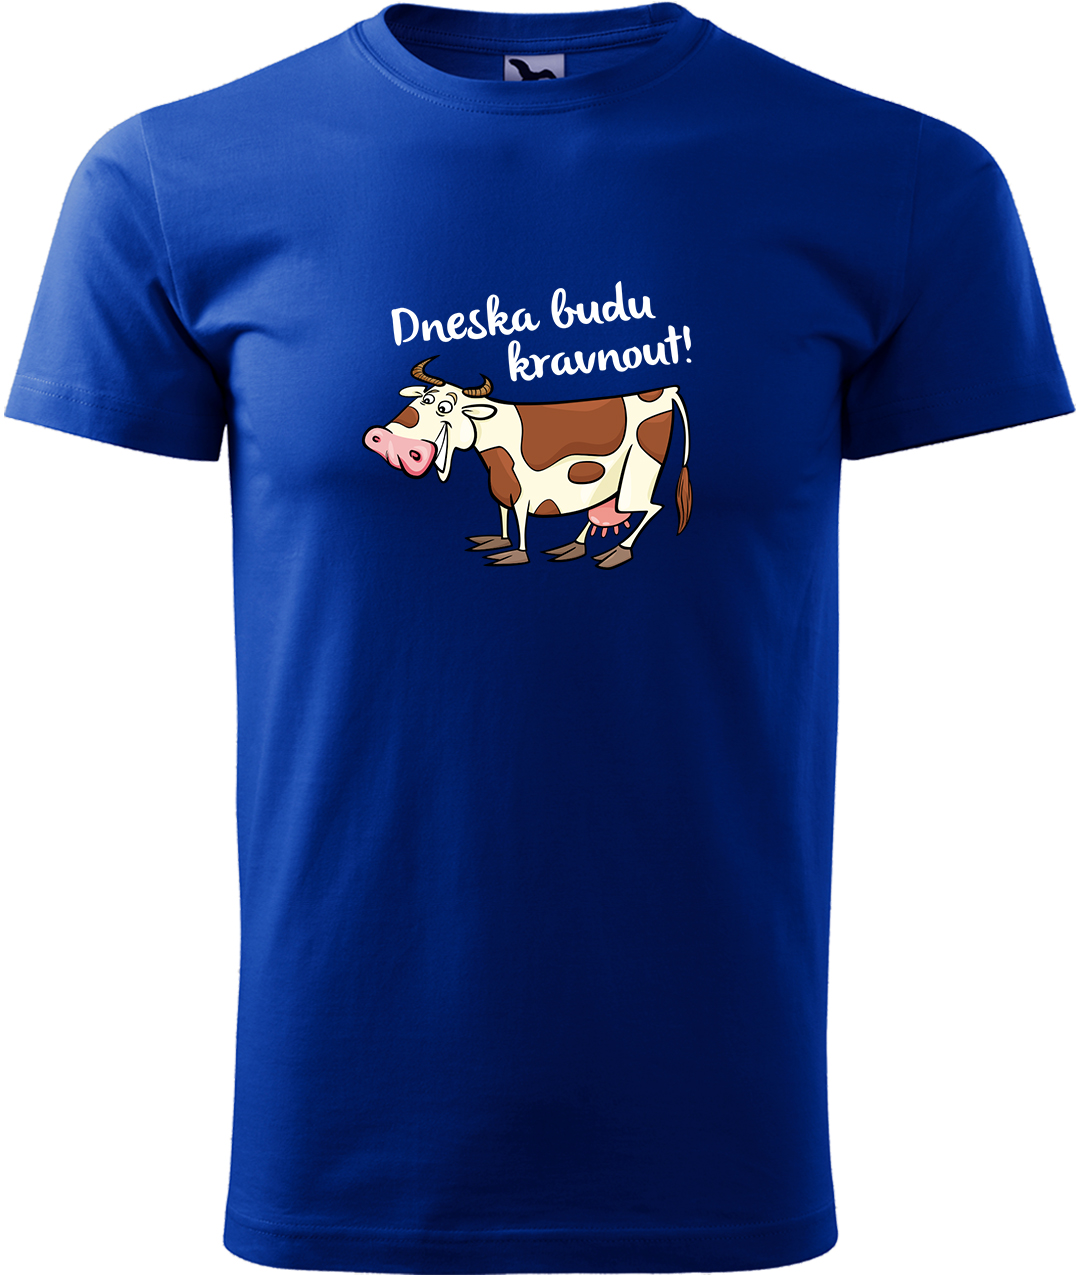 Pánské tričko s krávou - Dneska budu kravnout! Velikost: L, Barva: Královská modrá (05), Střih: pánský